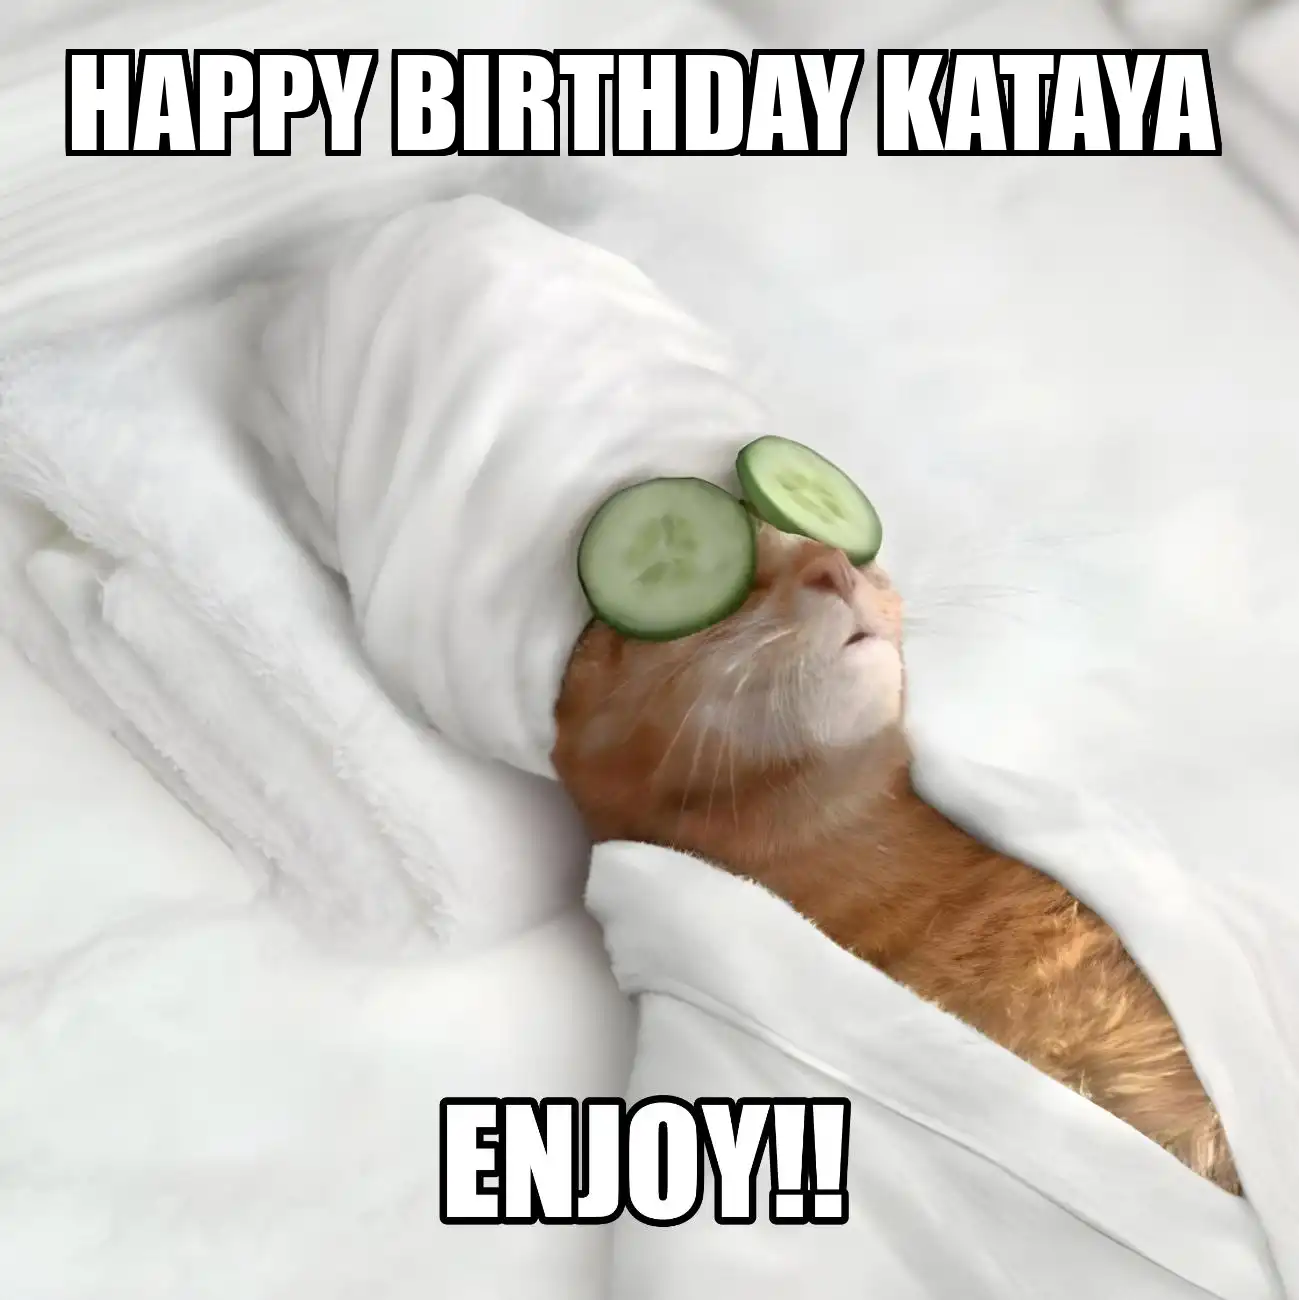 Happy Birthday Kataya Enjoy Cat Meme